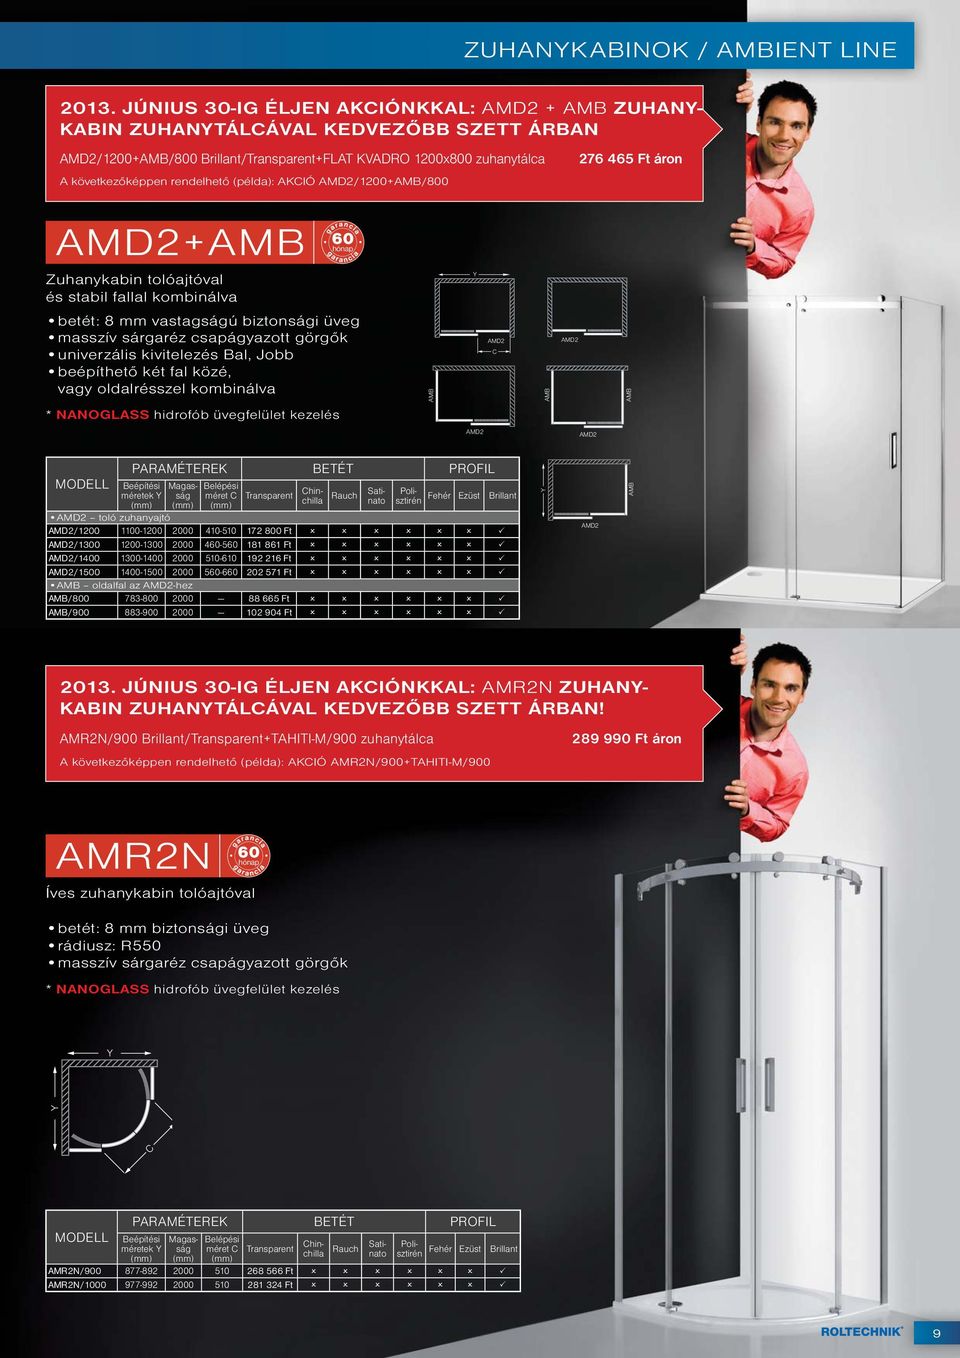 AKIÓ AMD2/1200+AMB/800 276 465 Ft áron AMD2+AMB Zuhanykabin tolóajtóval és stabil fallal kombinálva vagy oldalrésszel kombinálva AMB AMD2 AMB AMD2 AMB AMD2 AMD2 méretek méret Transparent Rauch